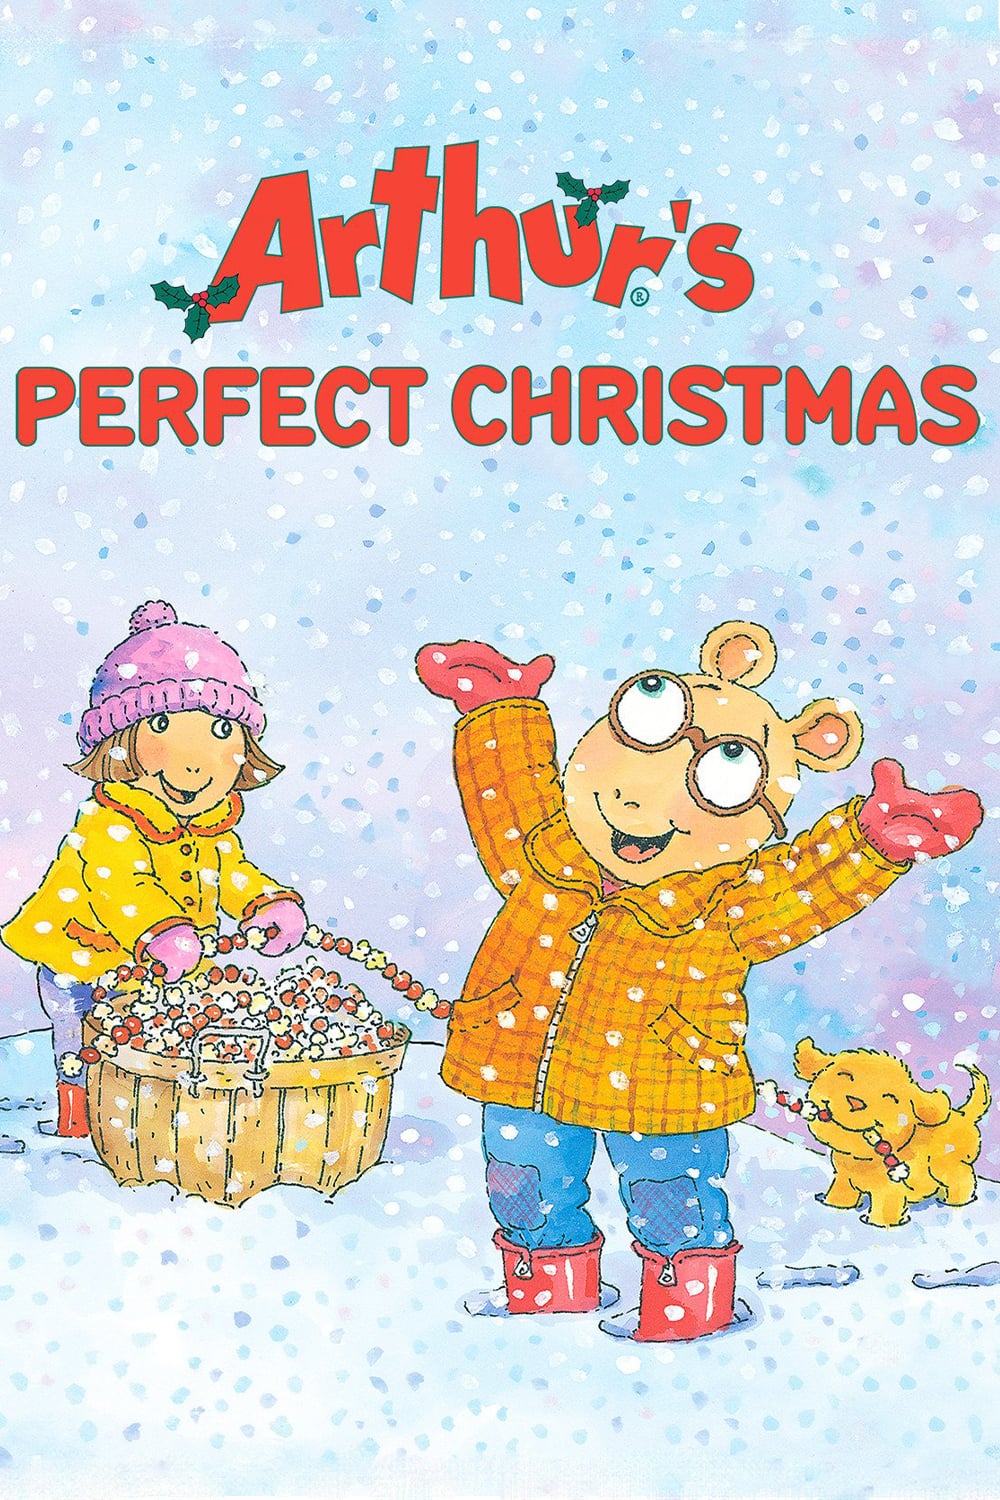 ARTHUR S PERFECT CHRISTMAS